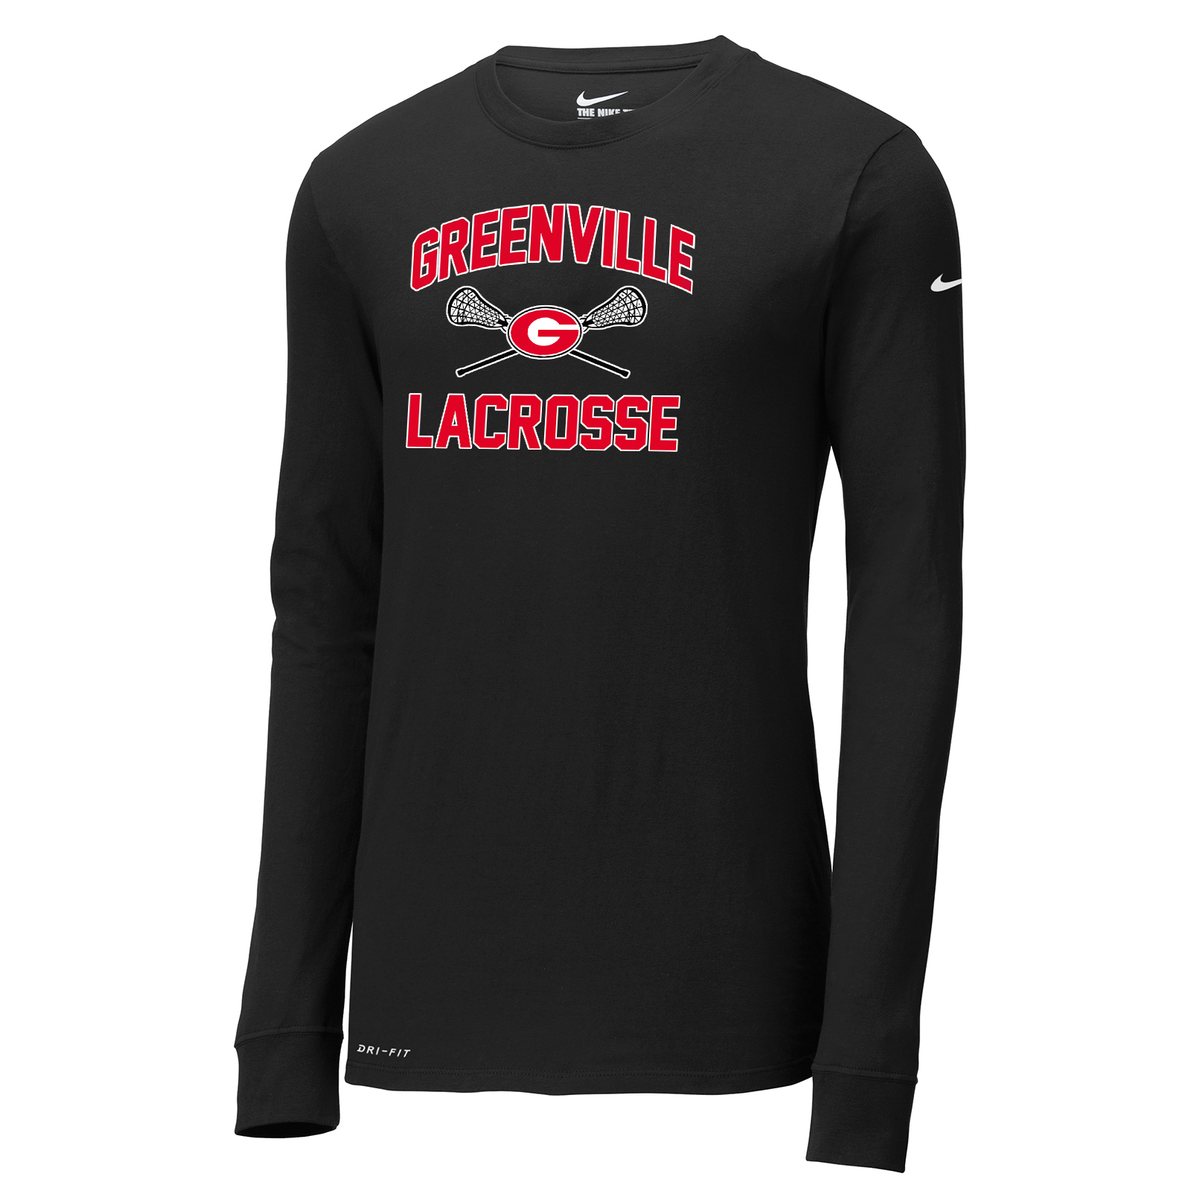 Greenville Girls Lacrosse Nike Dri-FIT Long Sleeve Tee